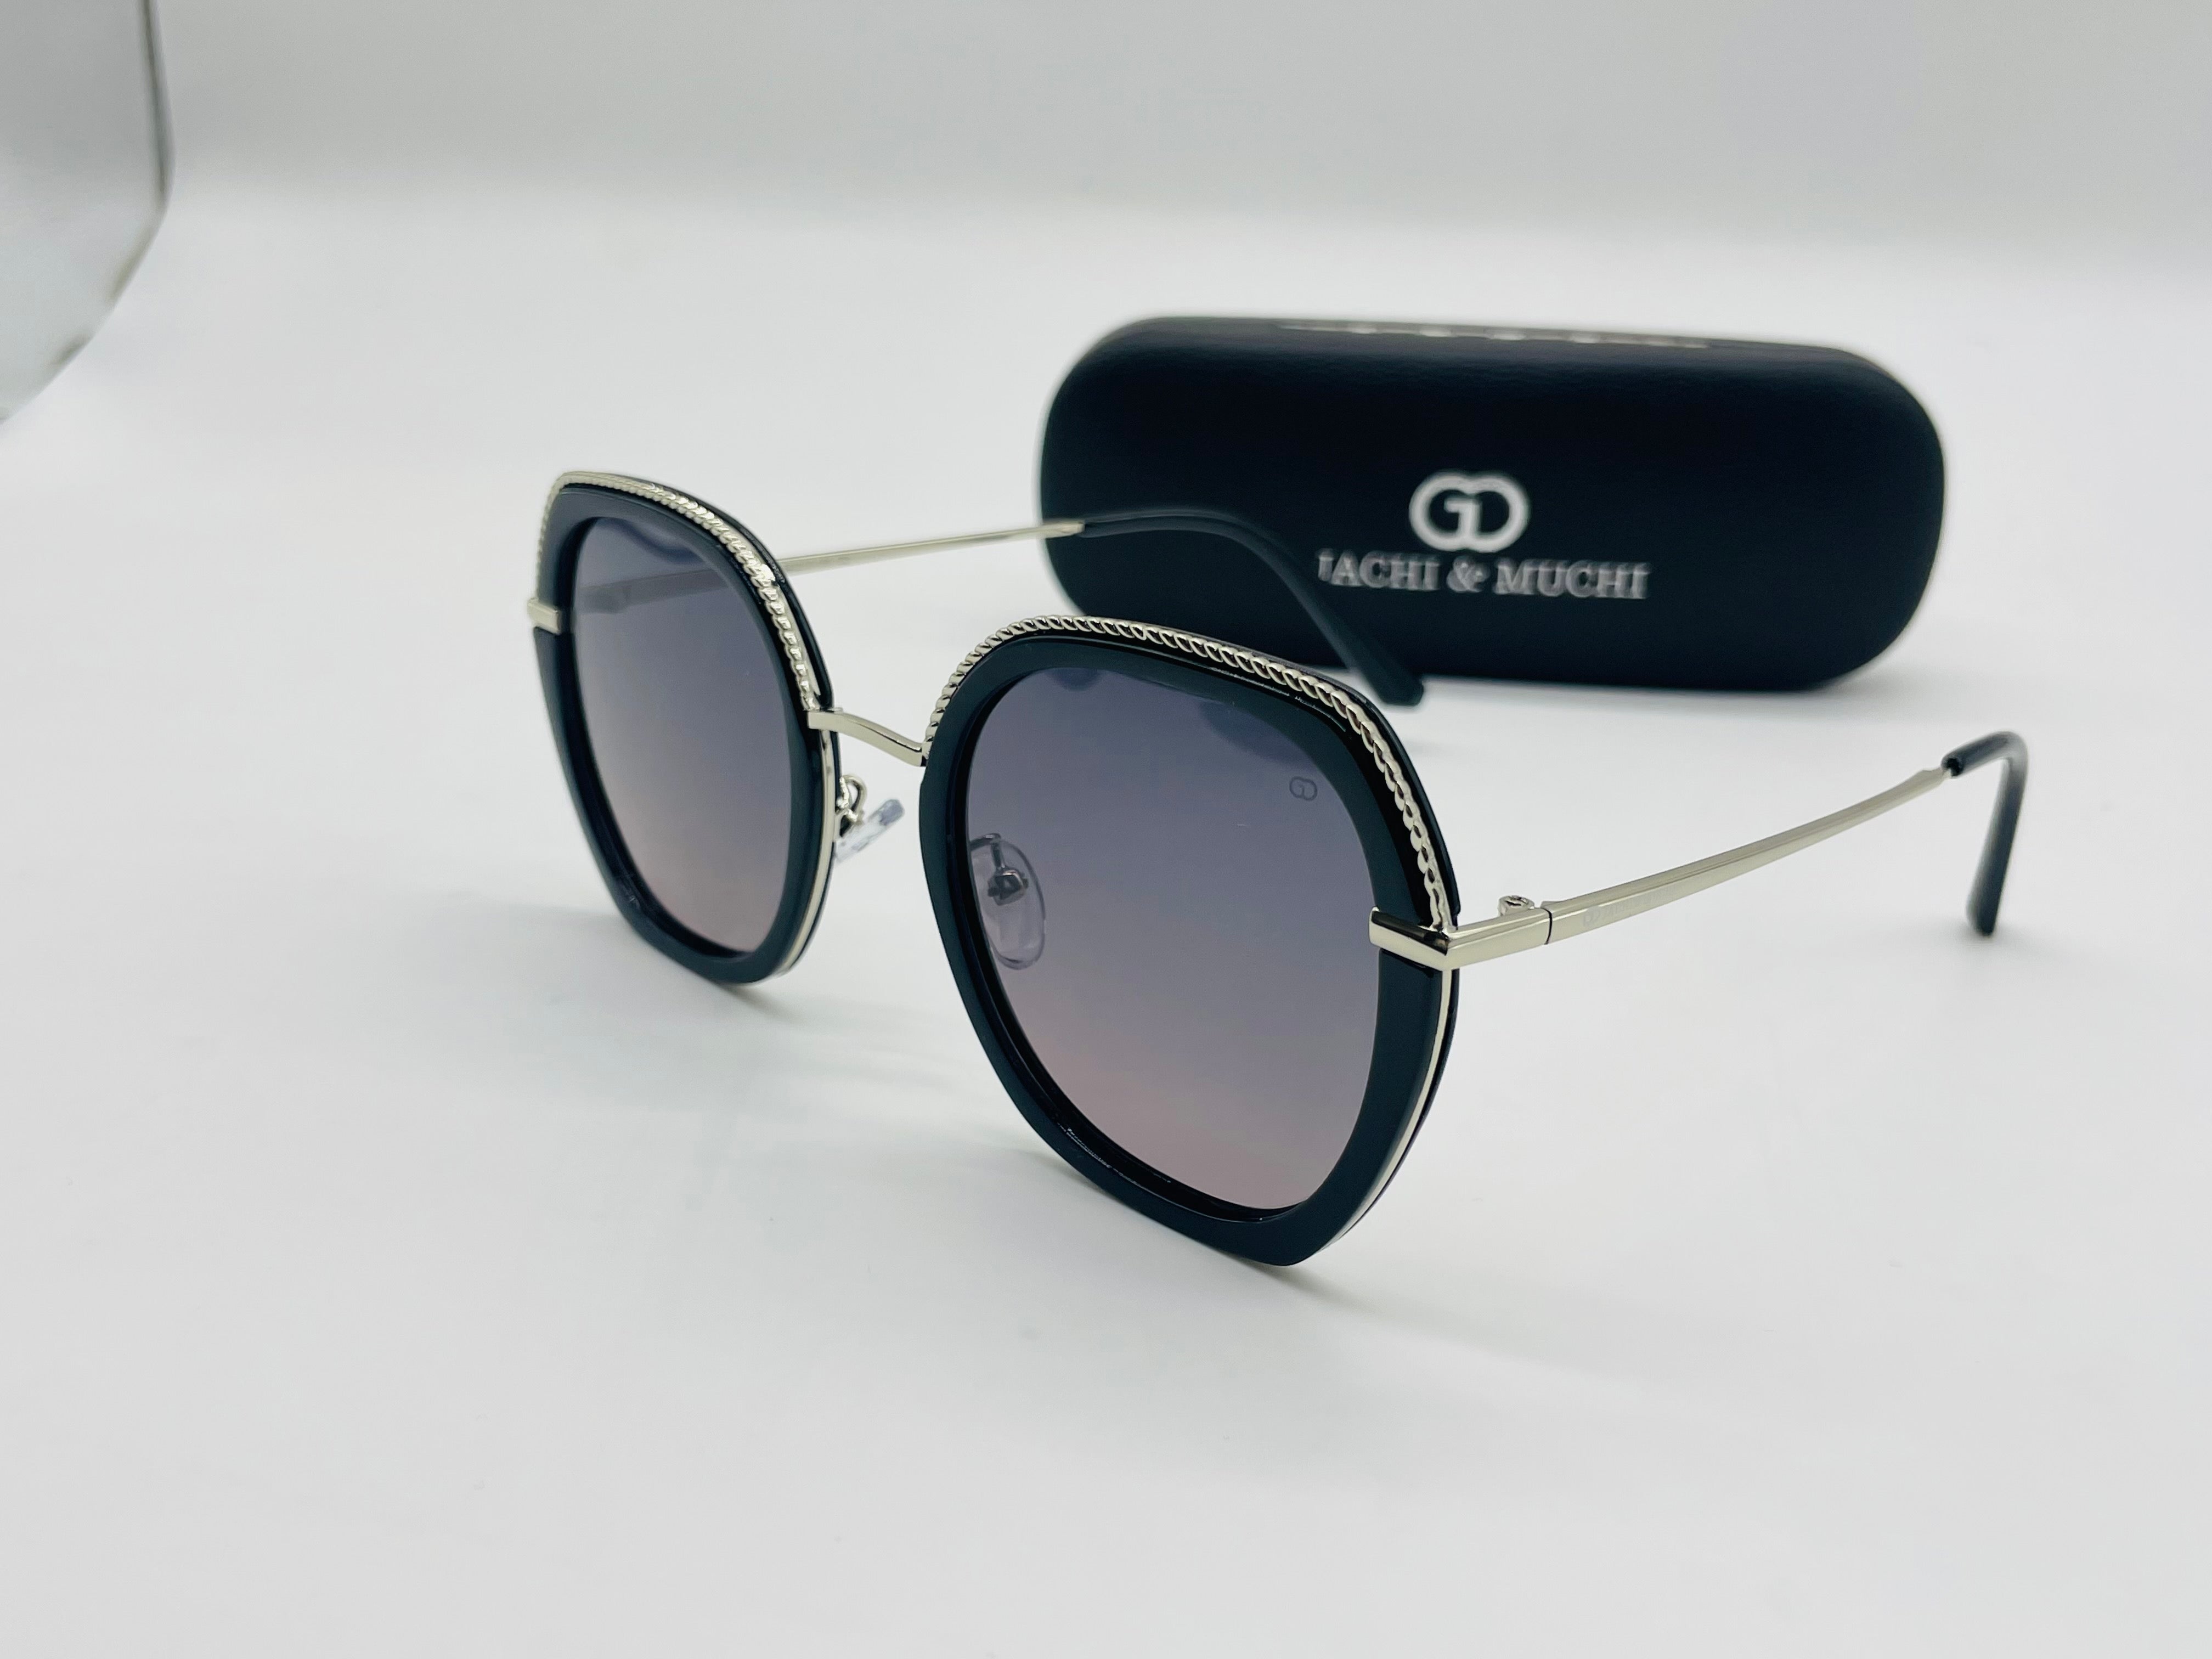 Retro Squre HD Polarized UV400 Sunglasses